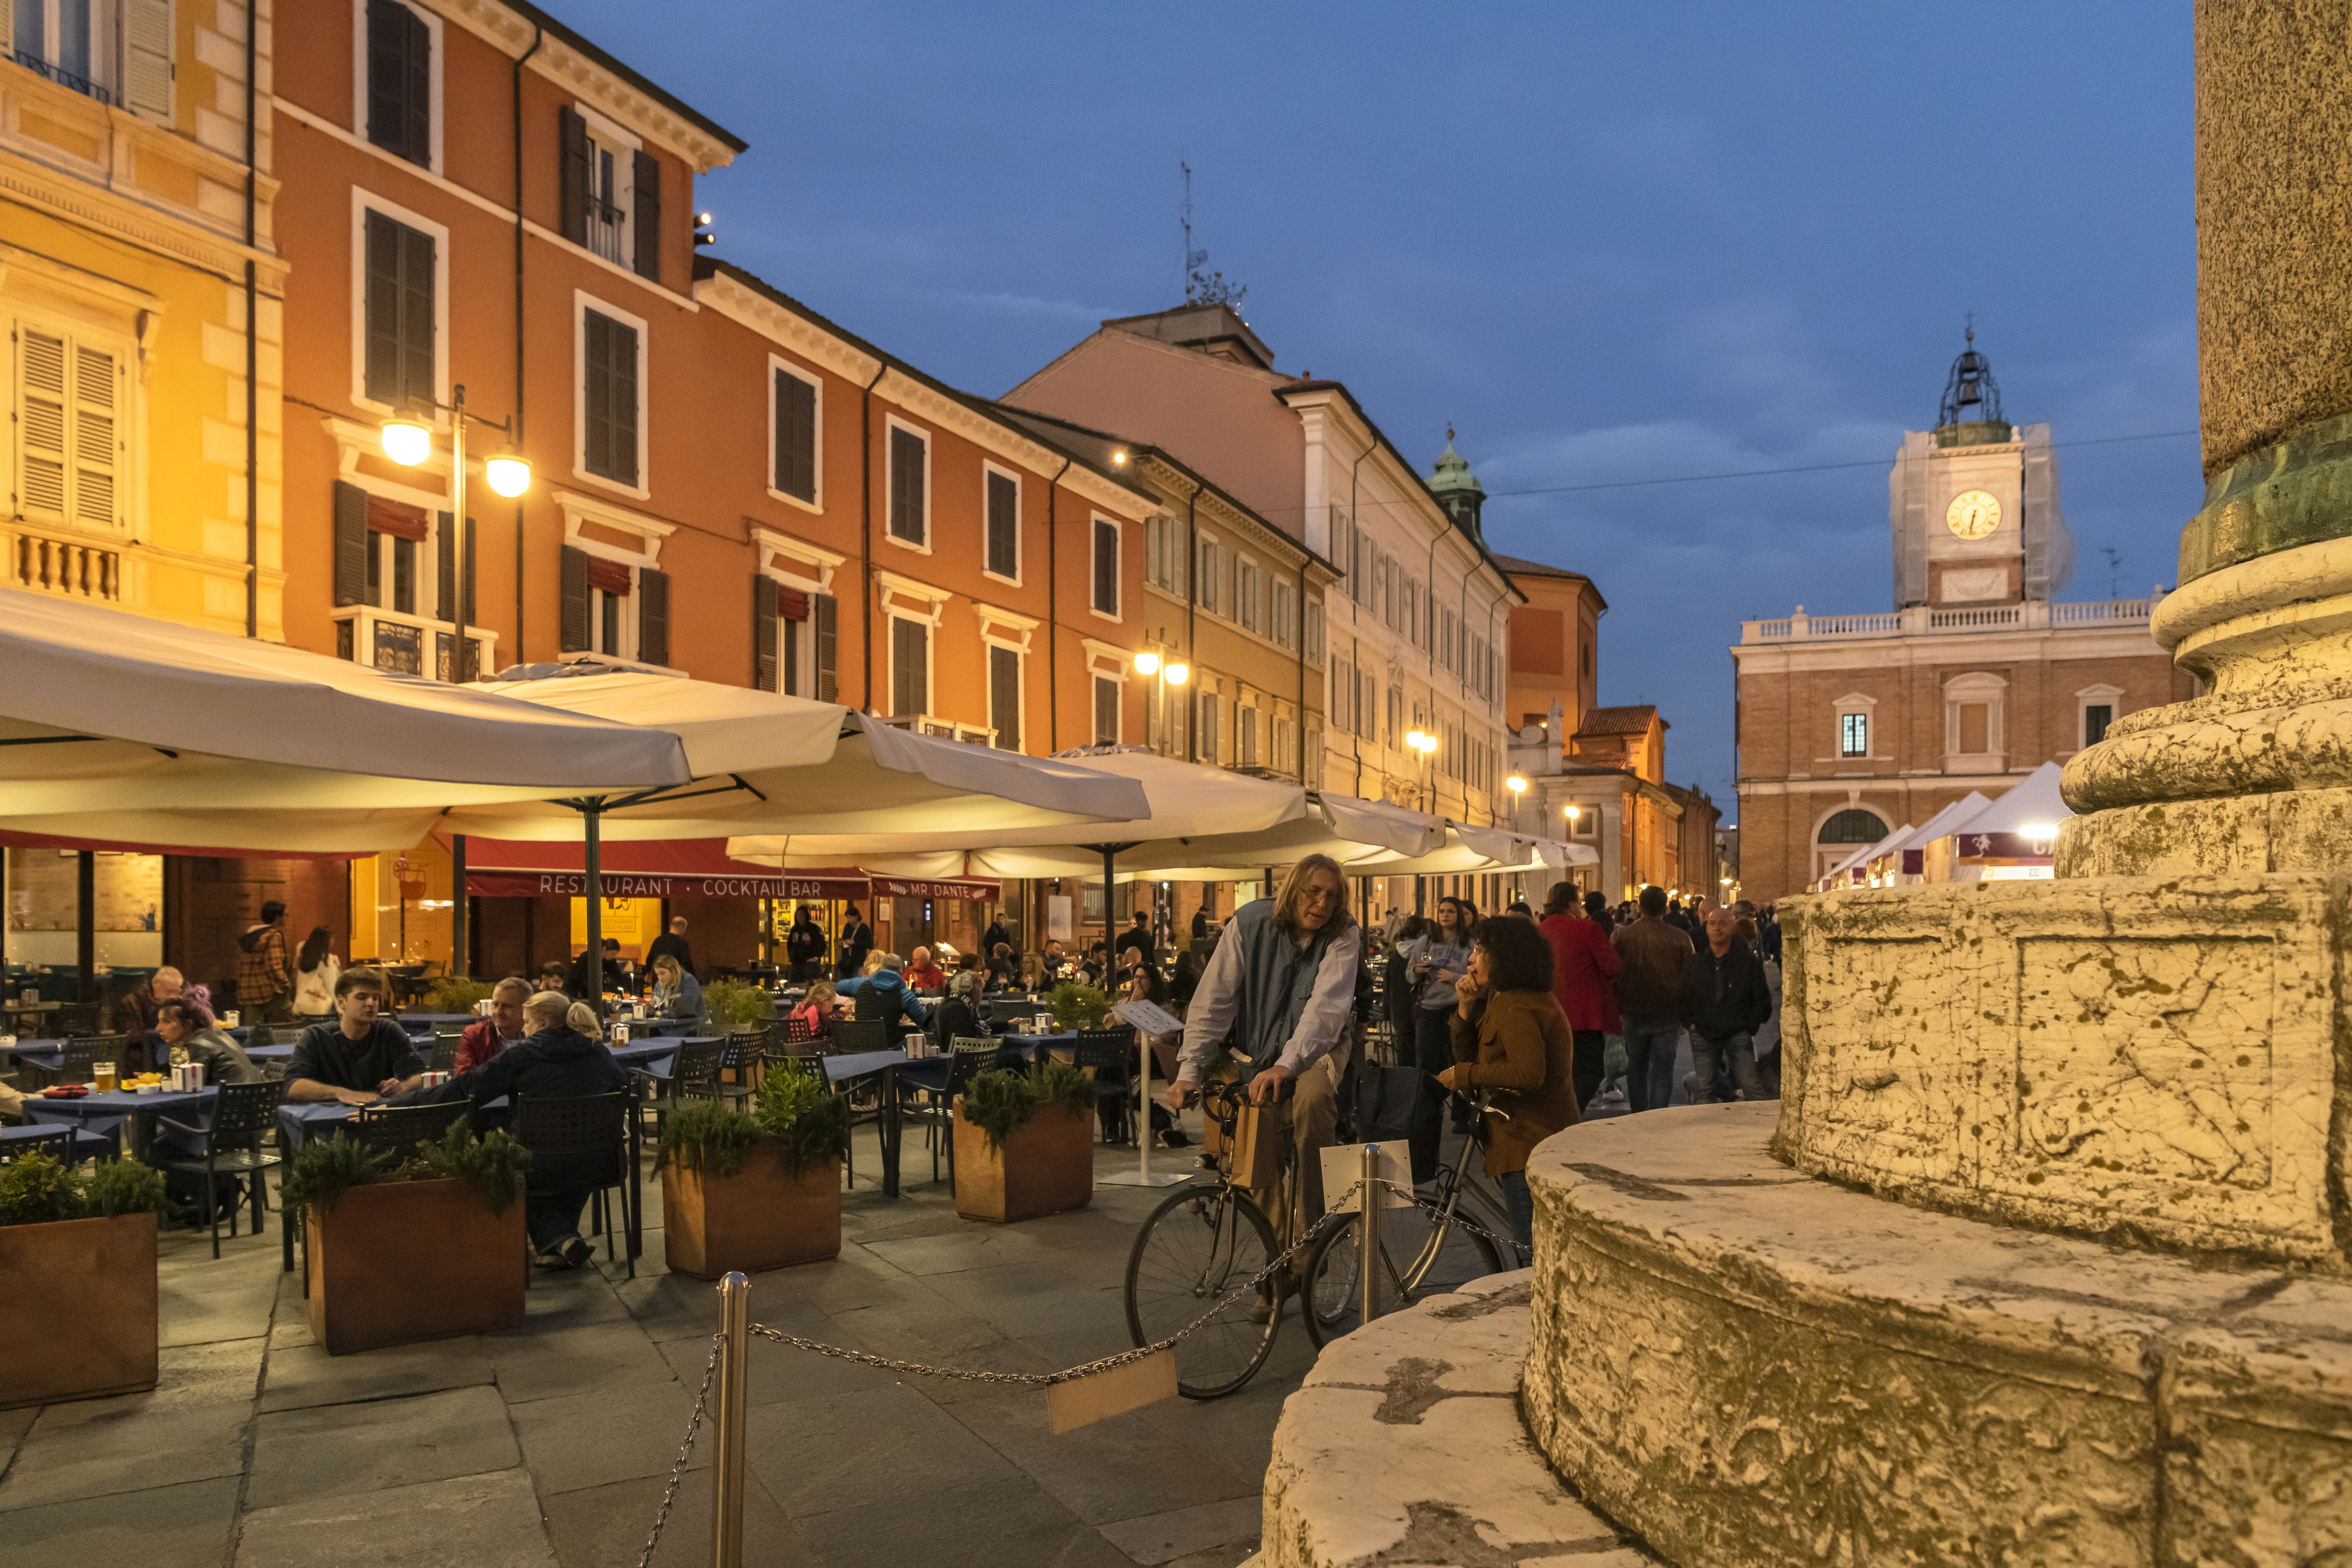 포폴로광장은 라벤나 시민들의 사랑방 같은 역할을 한다. 라벤나 시민들은 이곳에 모여 하루를 시작하고 하루를 마무리한다. 이승원 작가 제공